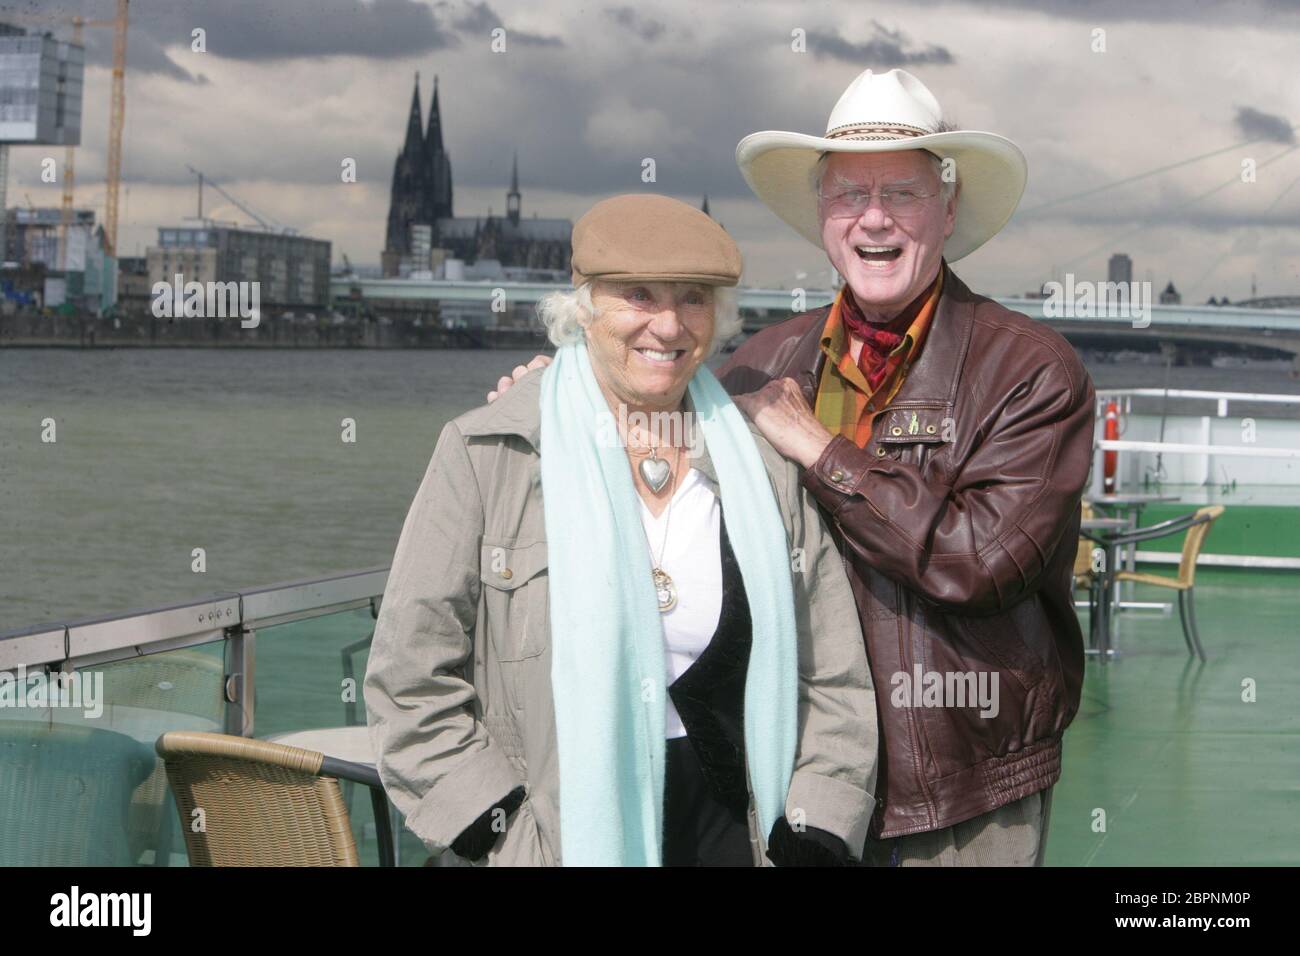 Larry Hagman - Rundfahrt auf dem Rhein - der US-amerikanische Schauspieler Larry Hagman alias J. R. Ewing (Dallas) und seine Ehefrau Maj Axelsson zu Besuch in Köln. Rundfahrt mit einem KD Schiff auf dem Rhein. Stockfoto